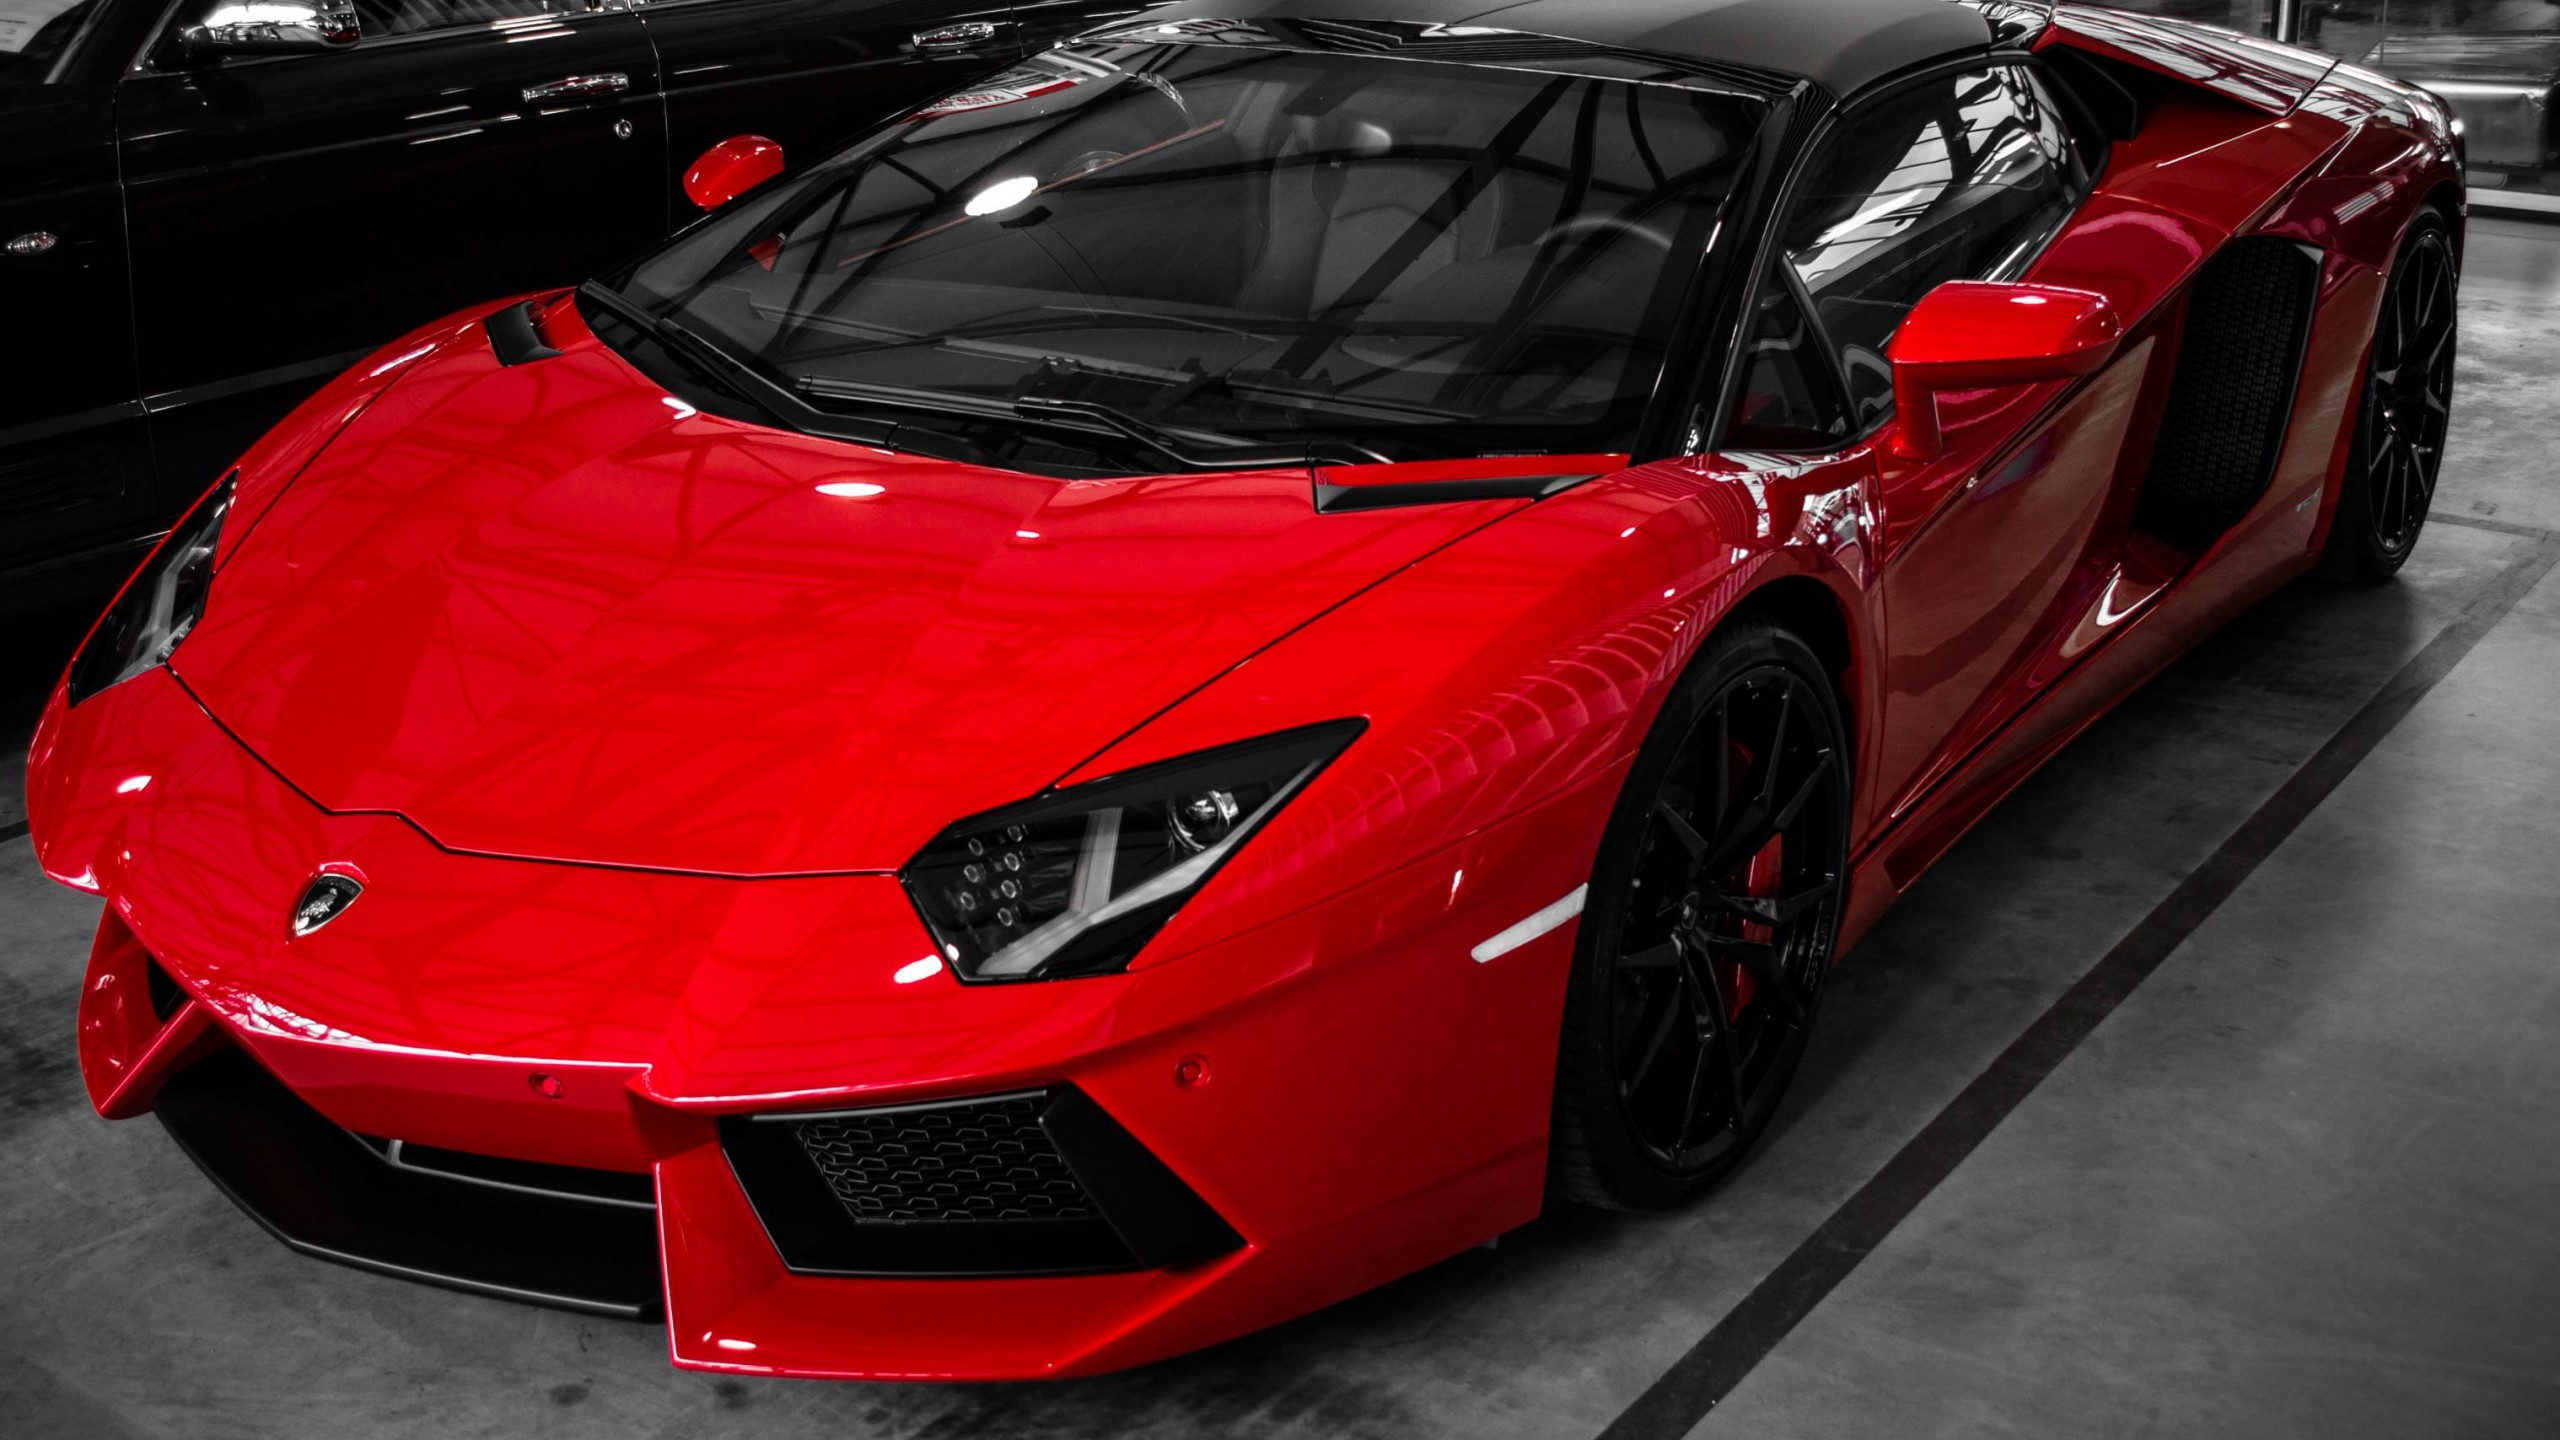 Red Lamborghini Aventador HD Wallpaper For Channel